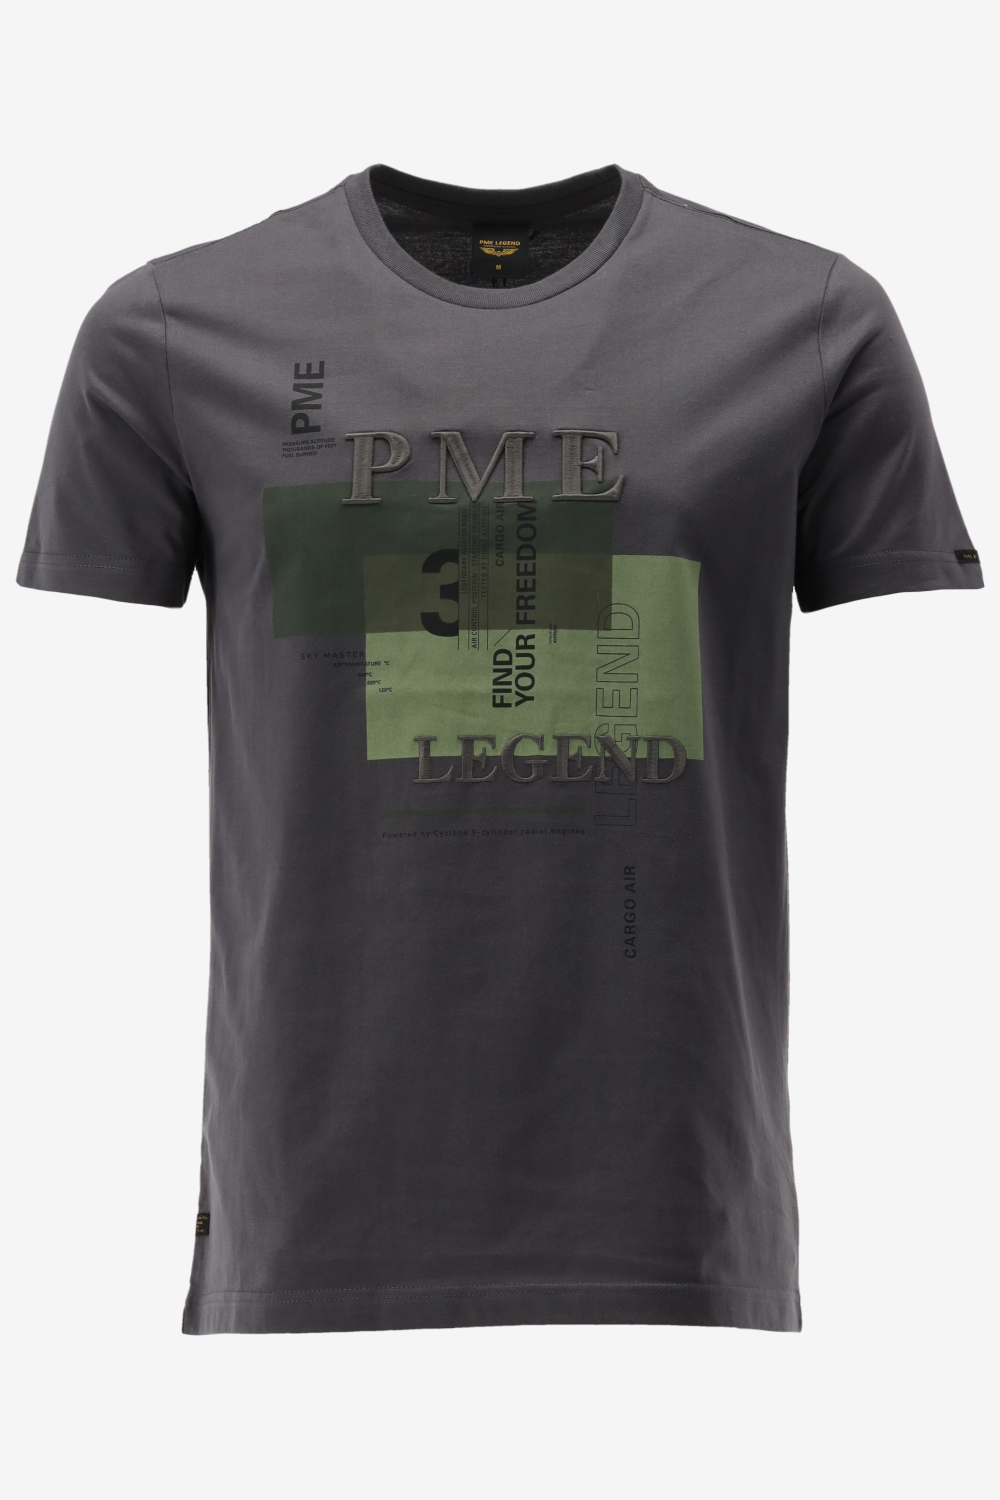 Pme Legend T shirt